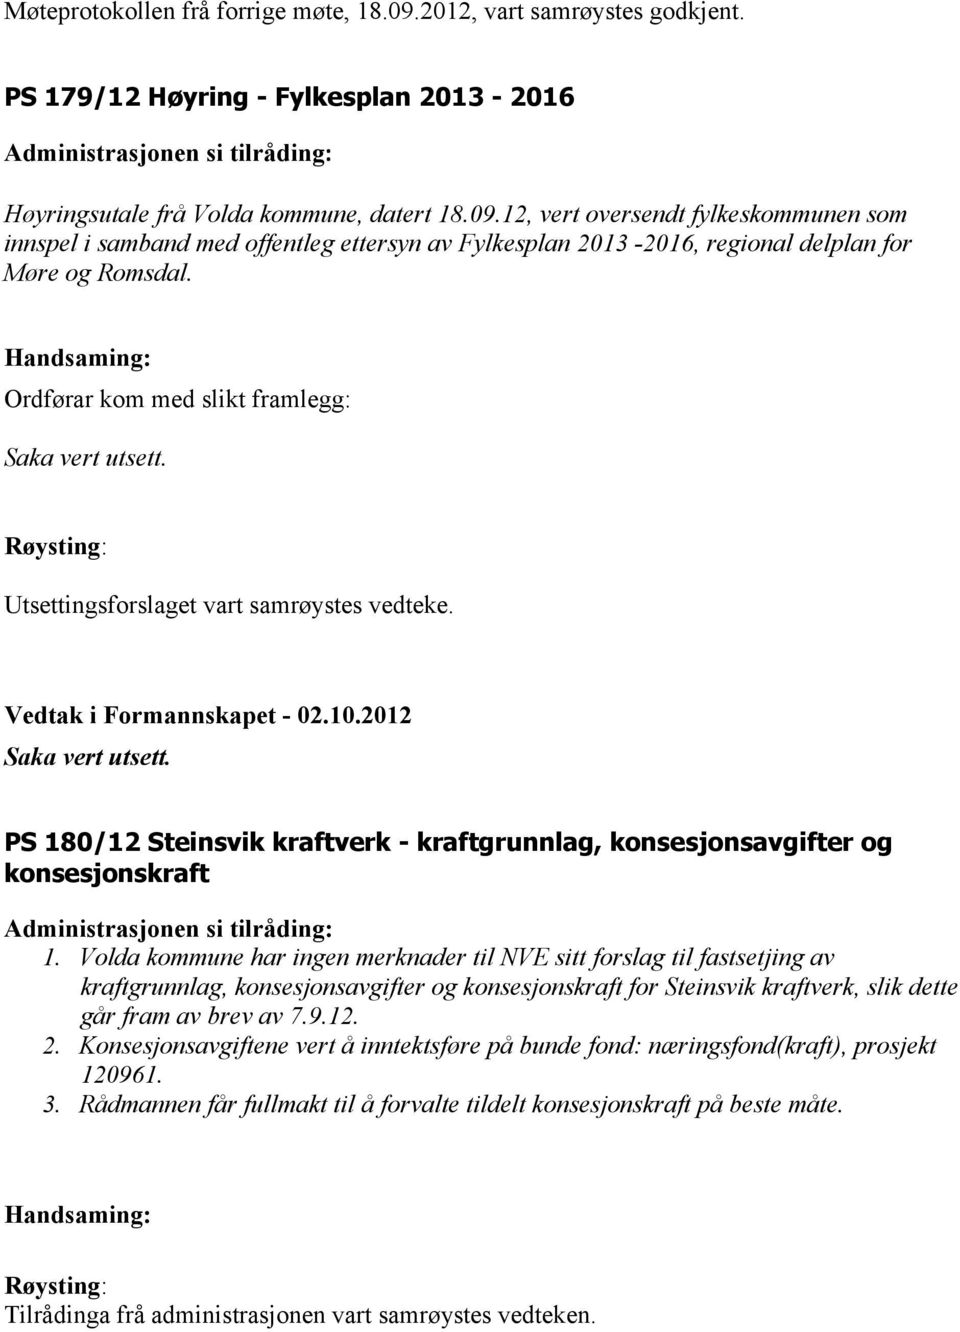 PS 180/12 Steinsvik kraftverk - kraftgrunnlag, konsesjonsavgifter og konsesjonskraft 1.